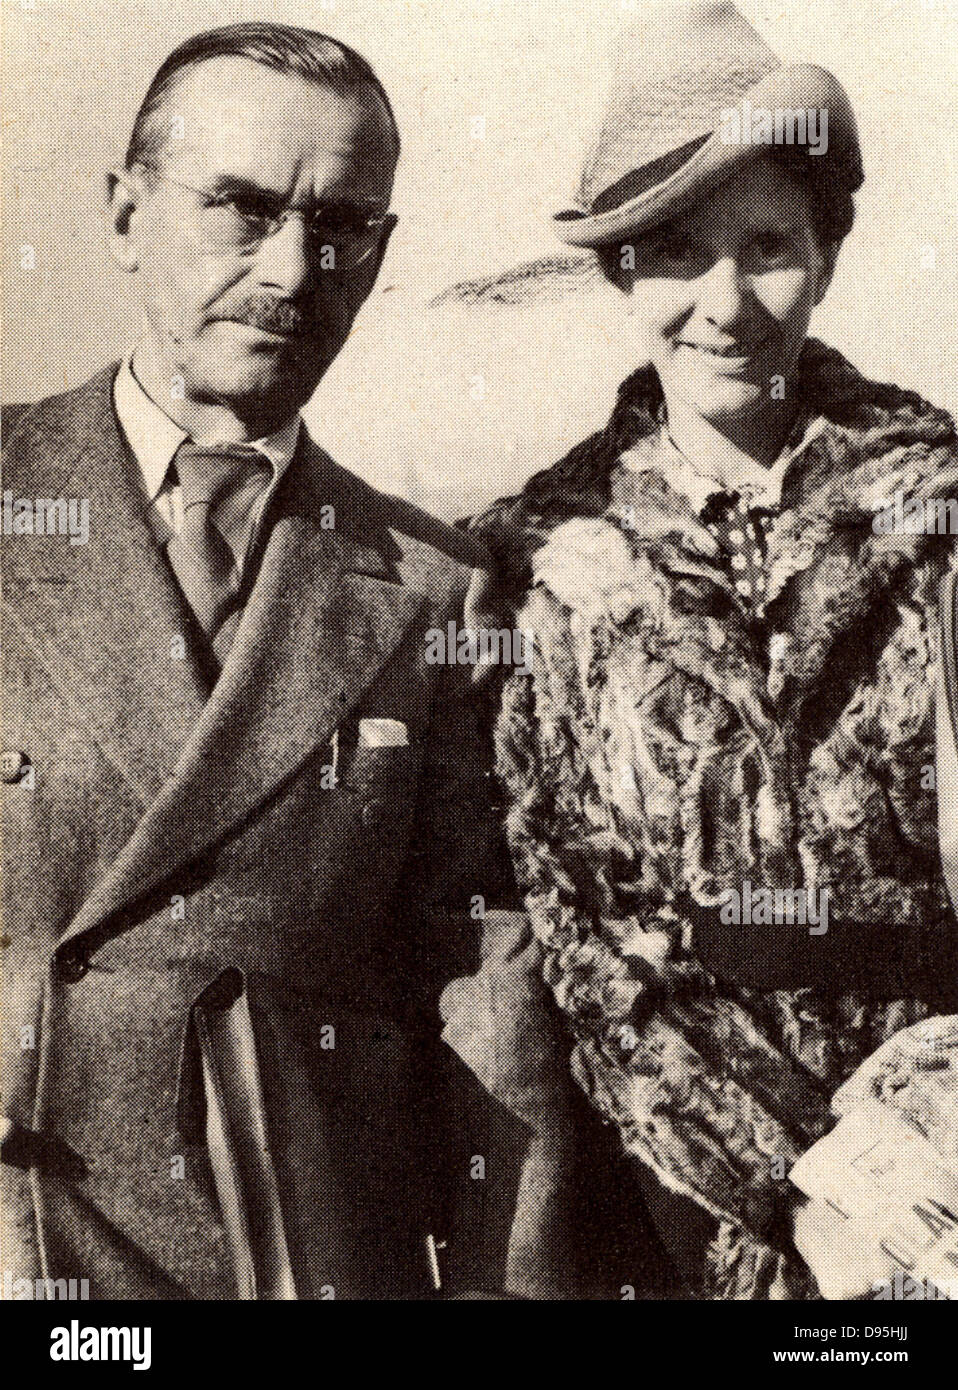 Thomas Mann (1875-1955) romanziere tedesco e fratello di Heinrich Mann. Premio Nobel per la letteratura 1929. Da una fotografia. Mezzitoni Foto Stock